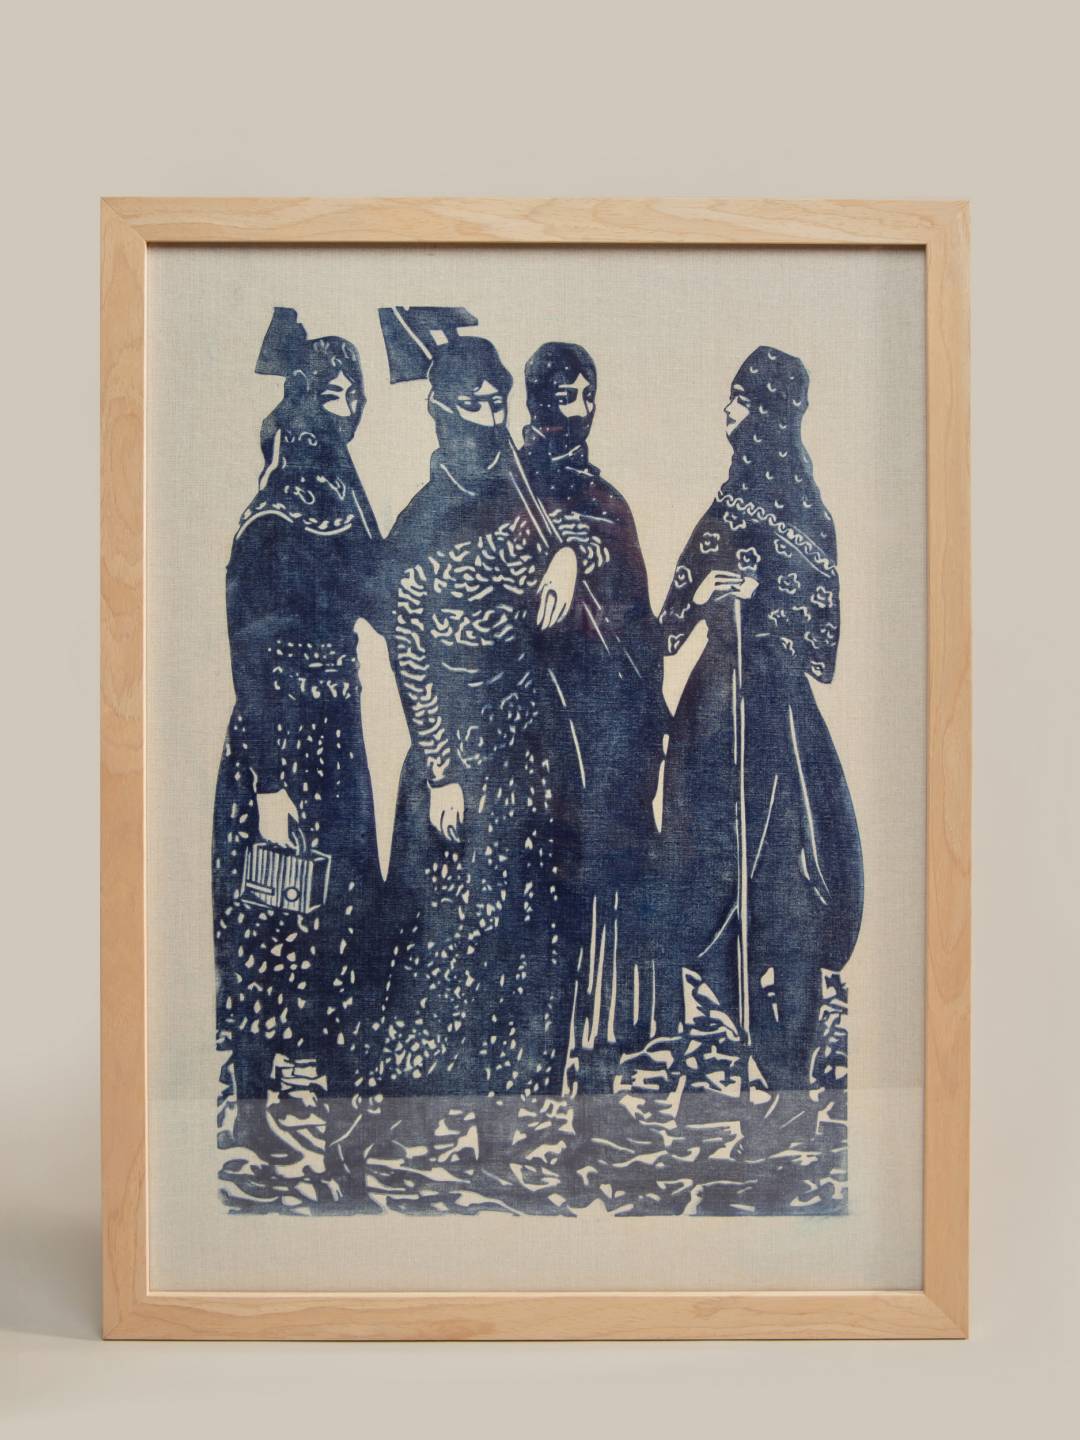 Maral Rahmanzadeh Linocut Hand Print "Our Girls Series" V1